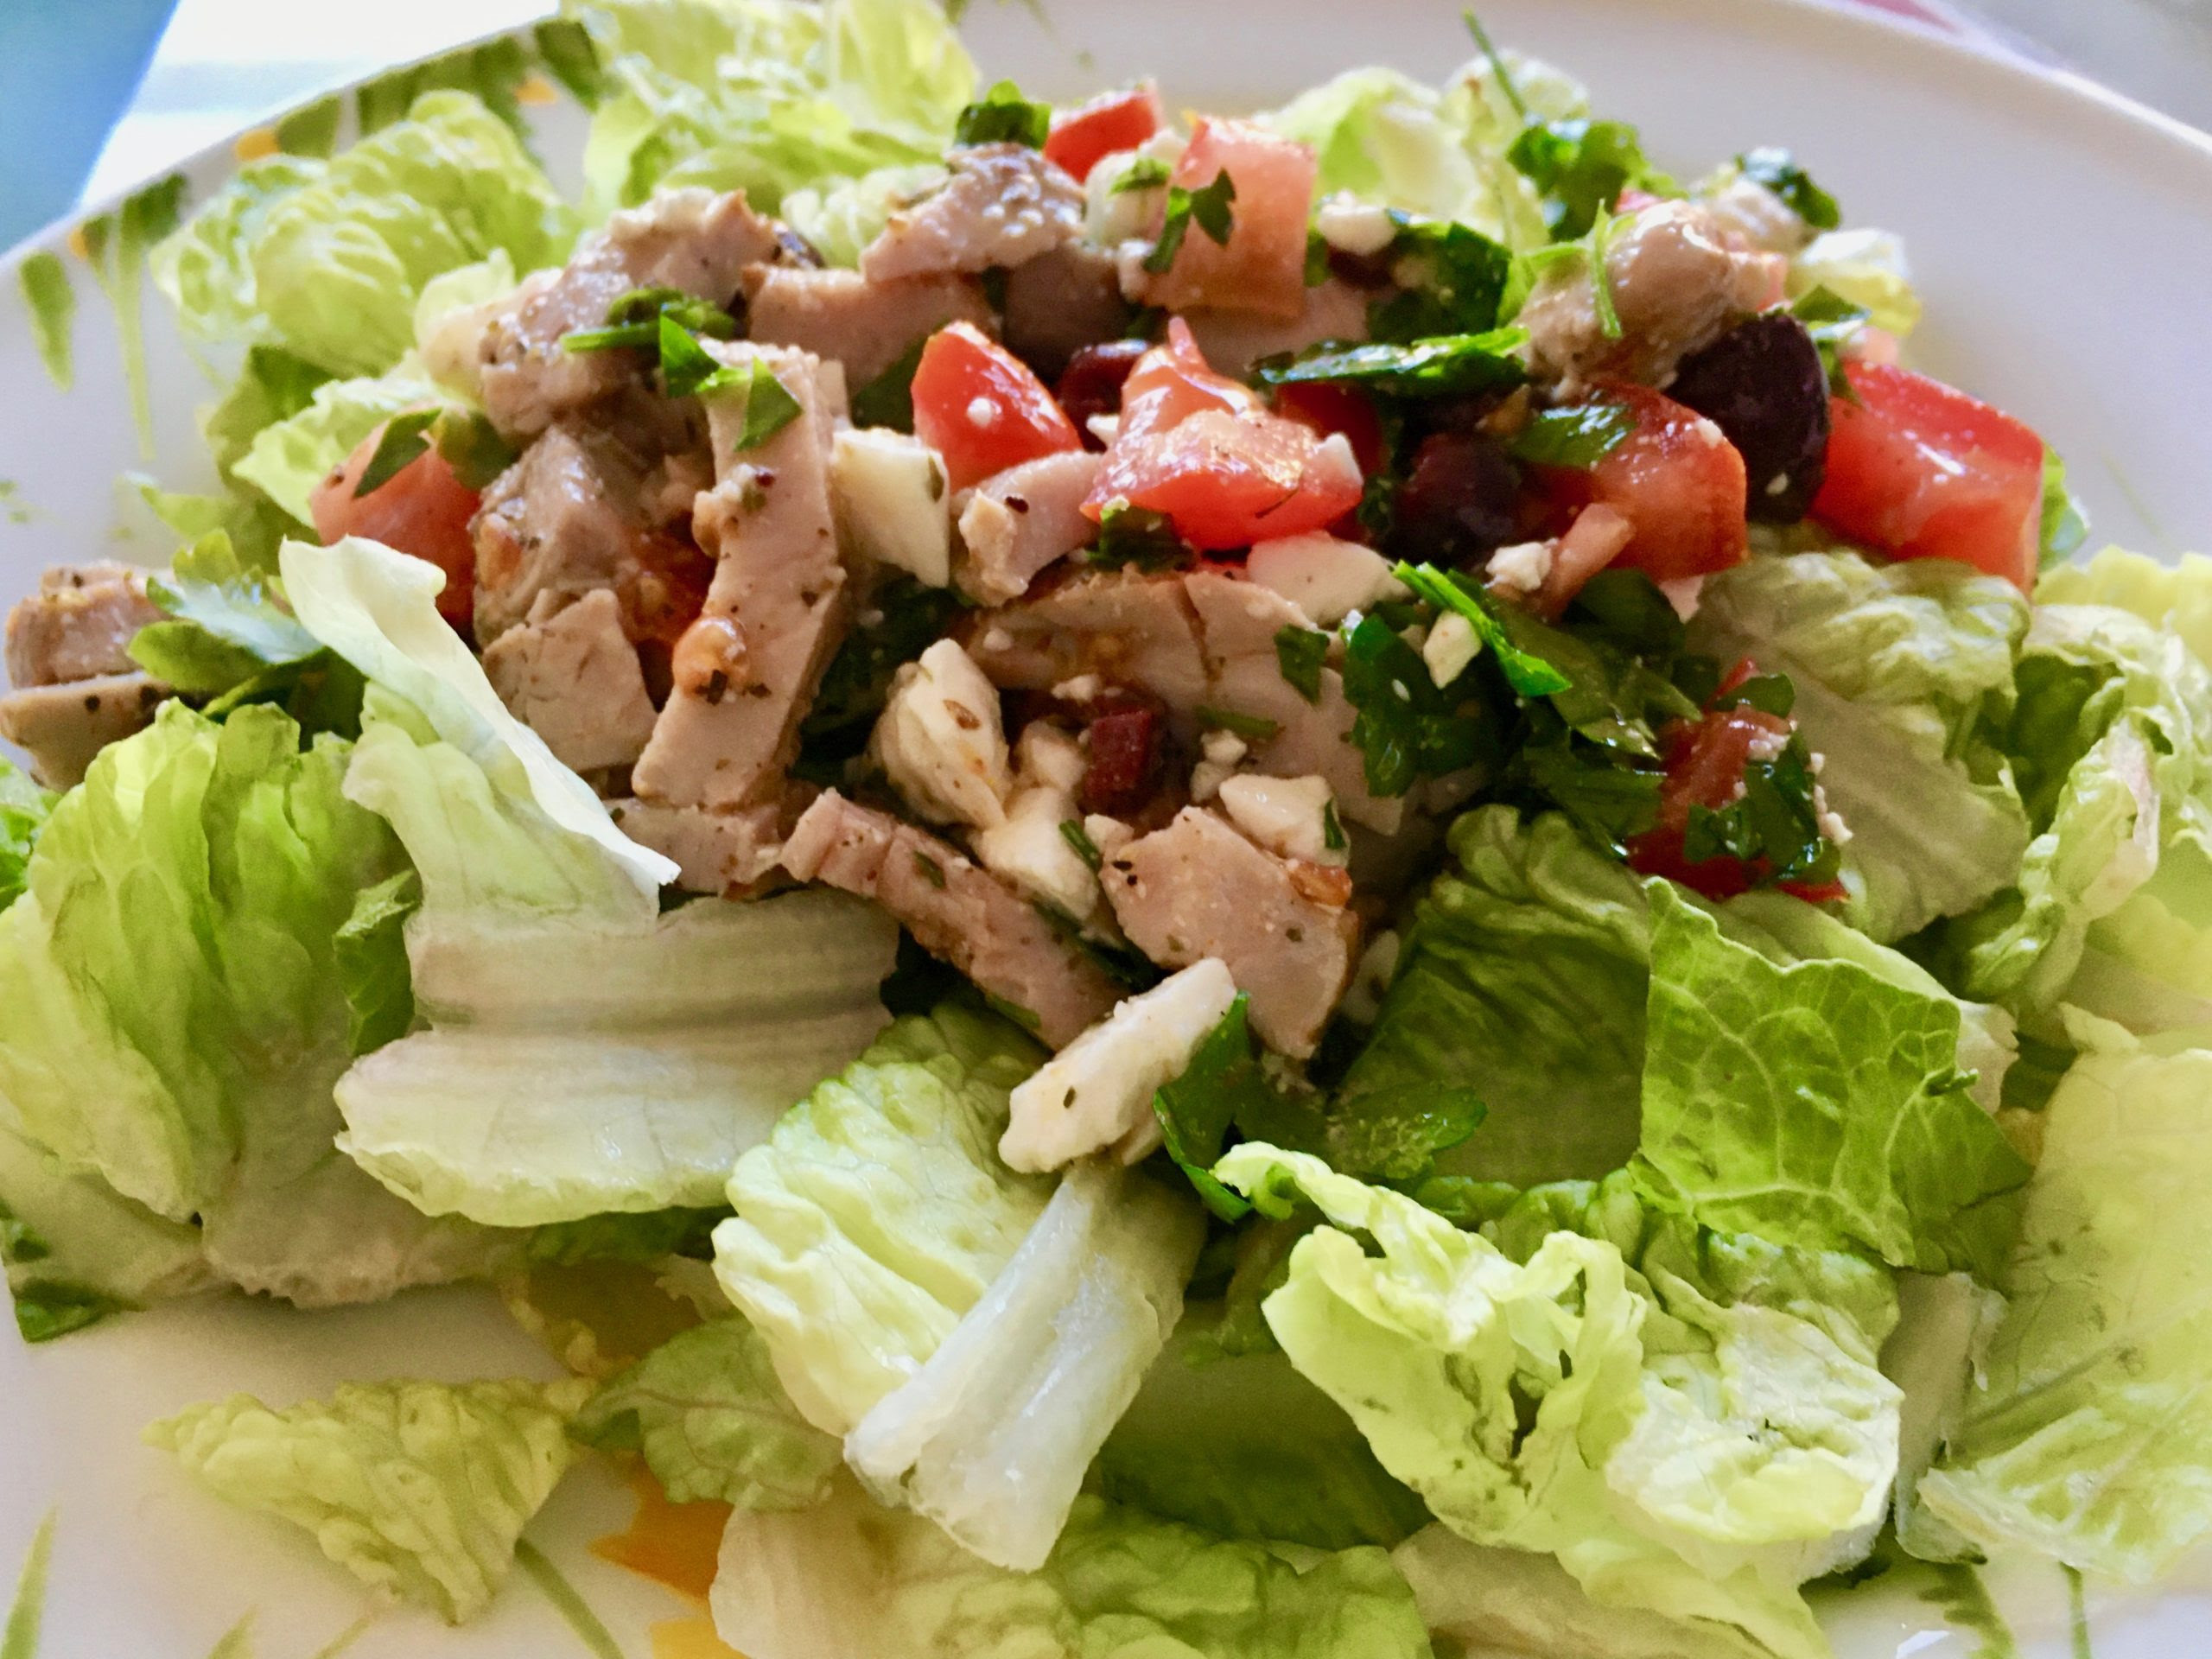 How to make roasted pork tenderloin: Greek Salad With Leftover Pork Tenderloin Bite Of The Best